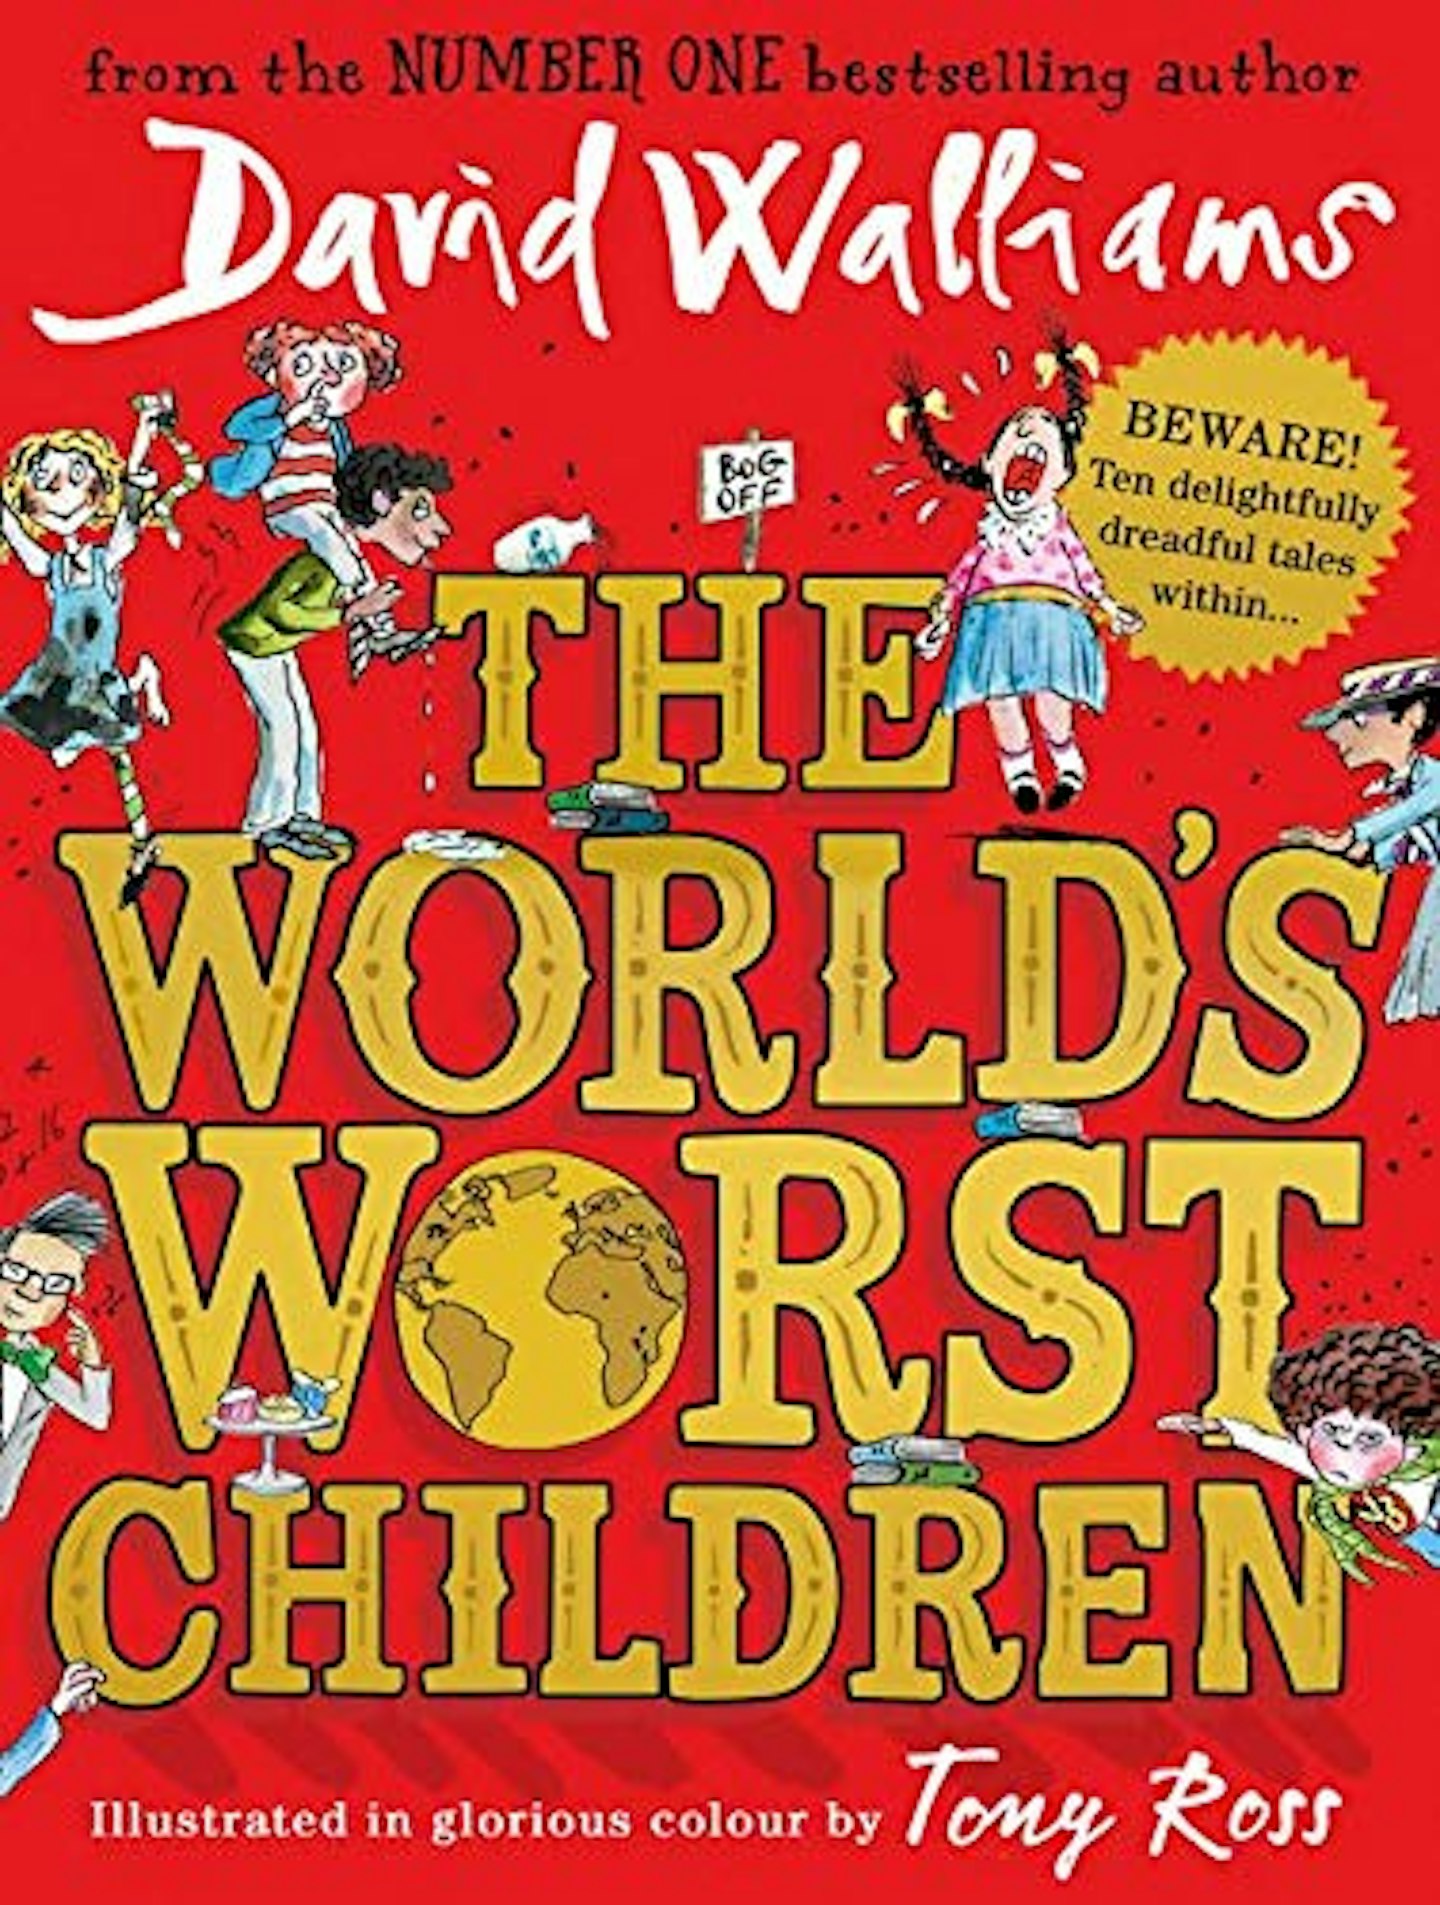 The Worldu2019s Worst Children by David Walliams